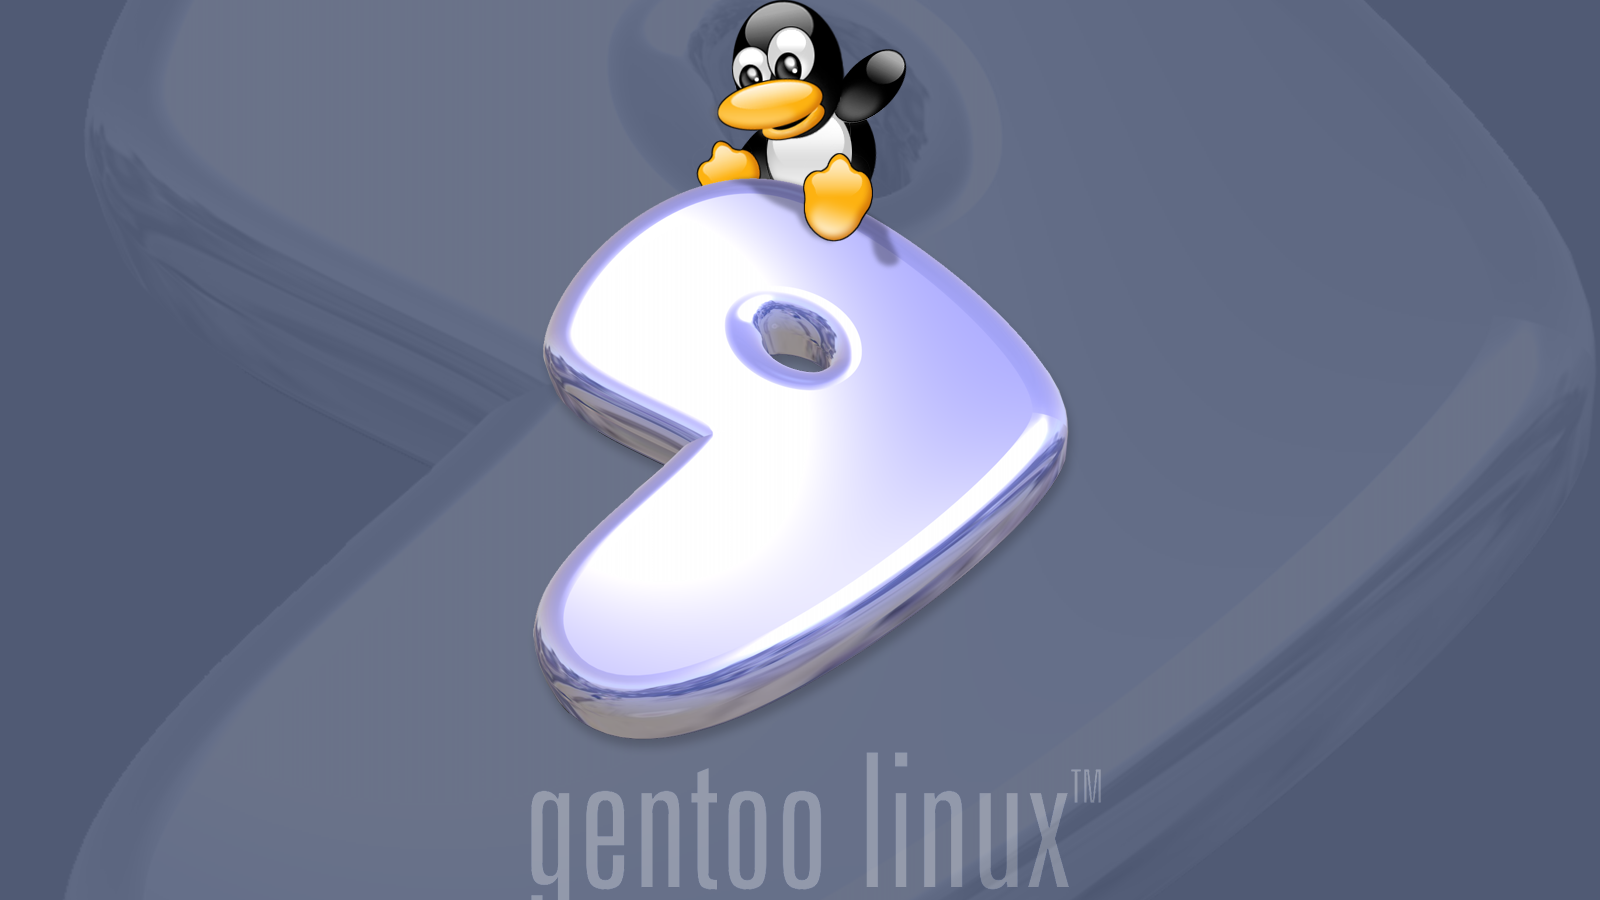 изображение Linux